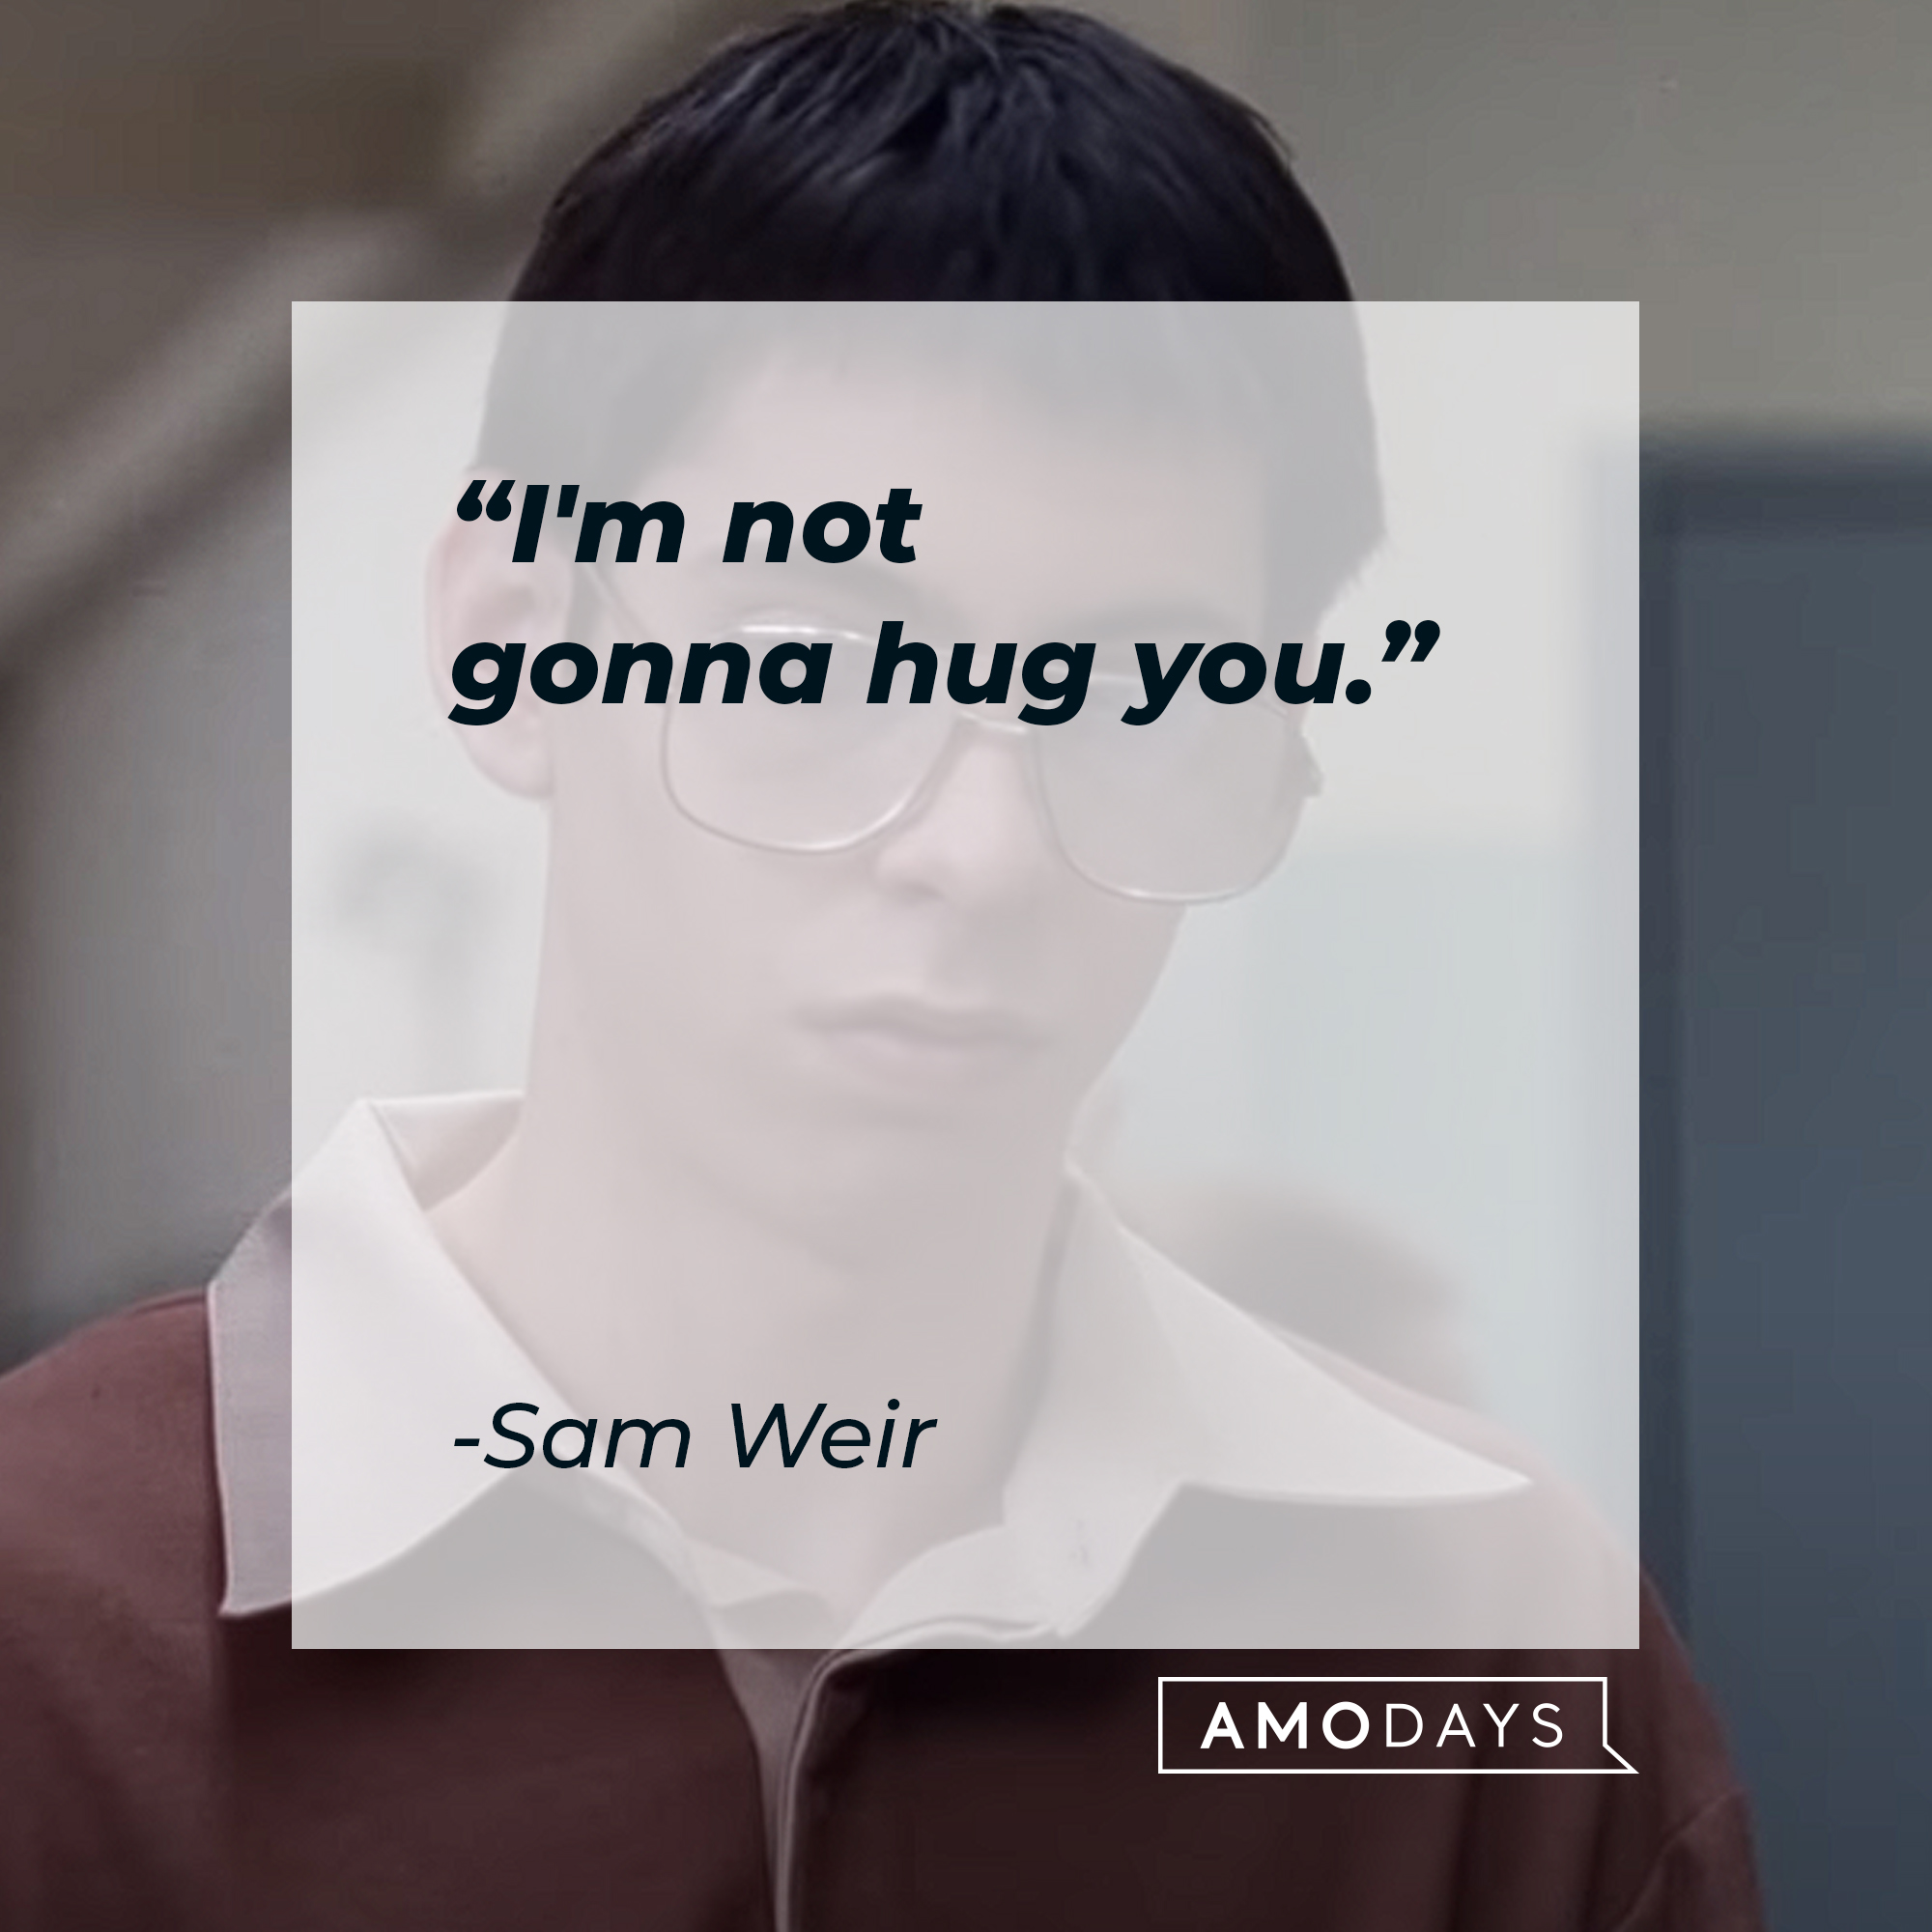 Sam Weir's quote: "I'm not gonna hug you." | Source: Youtube.com/paramountmovies